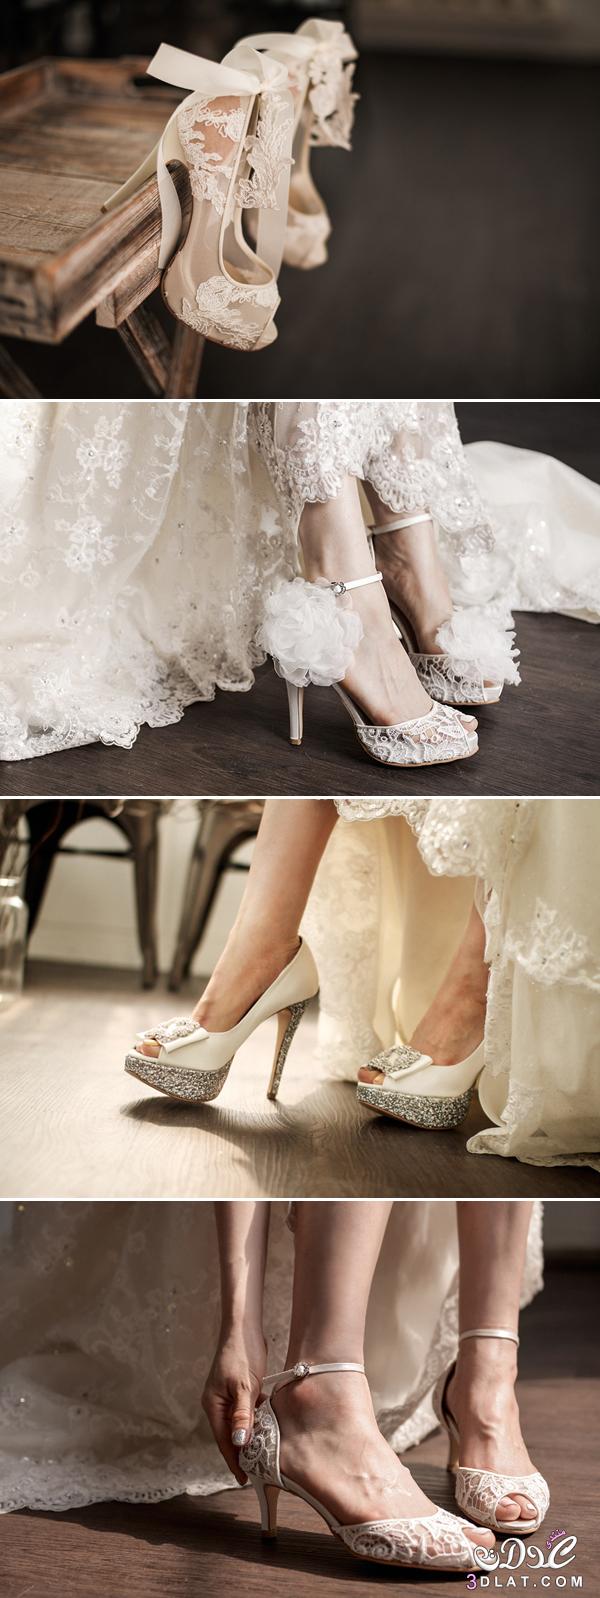 كولكشن مميز ومتنوع من احذيه العروس ، مجموعه من احذيه الكعب العالي الساحره ستبهرك